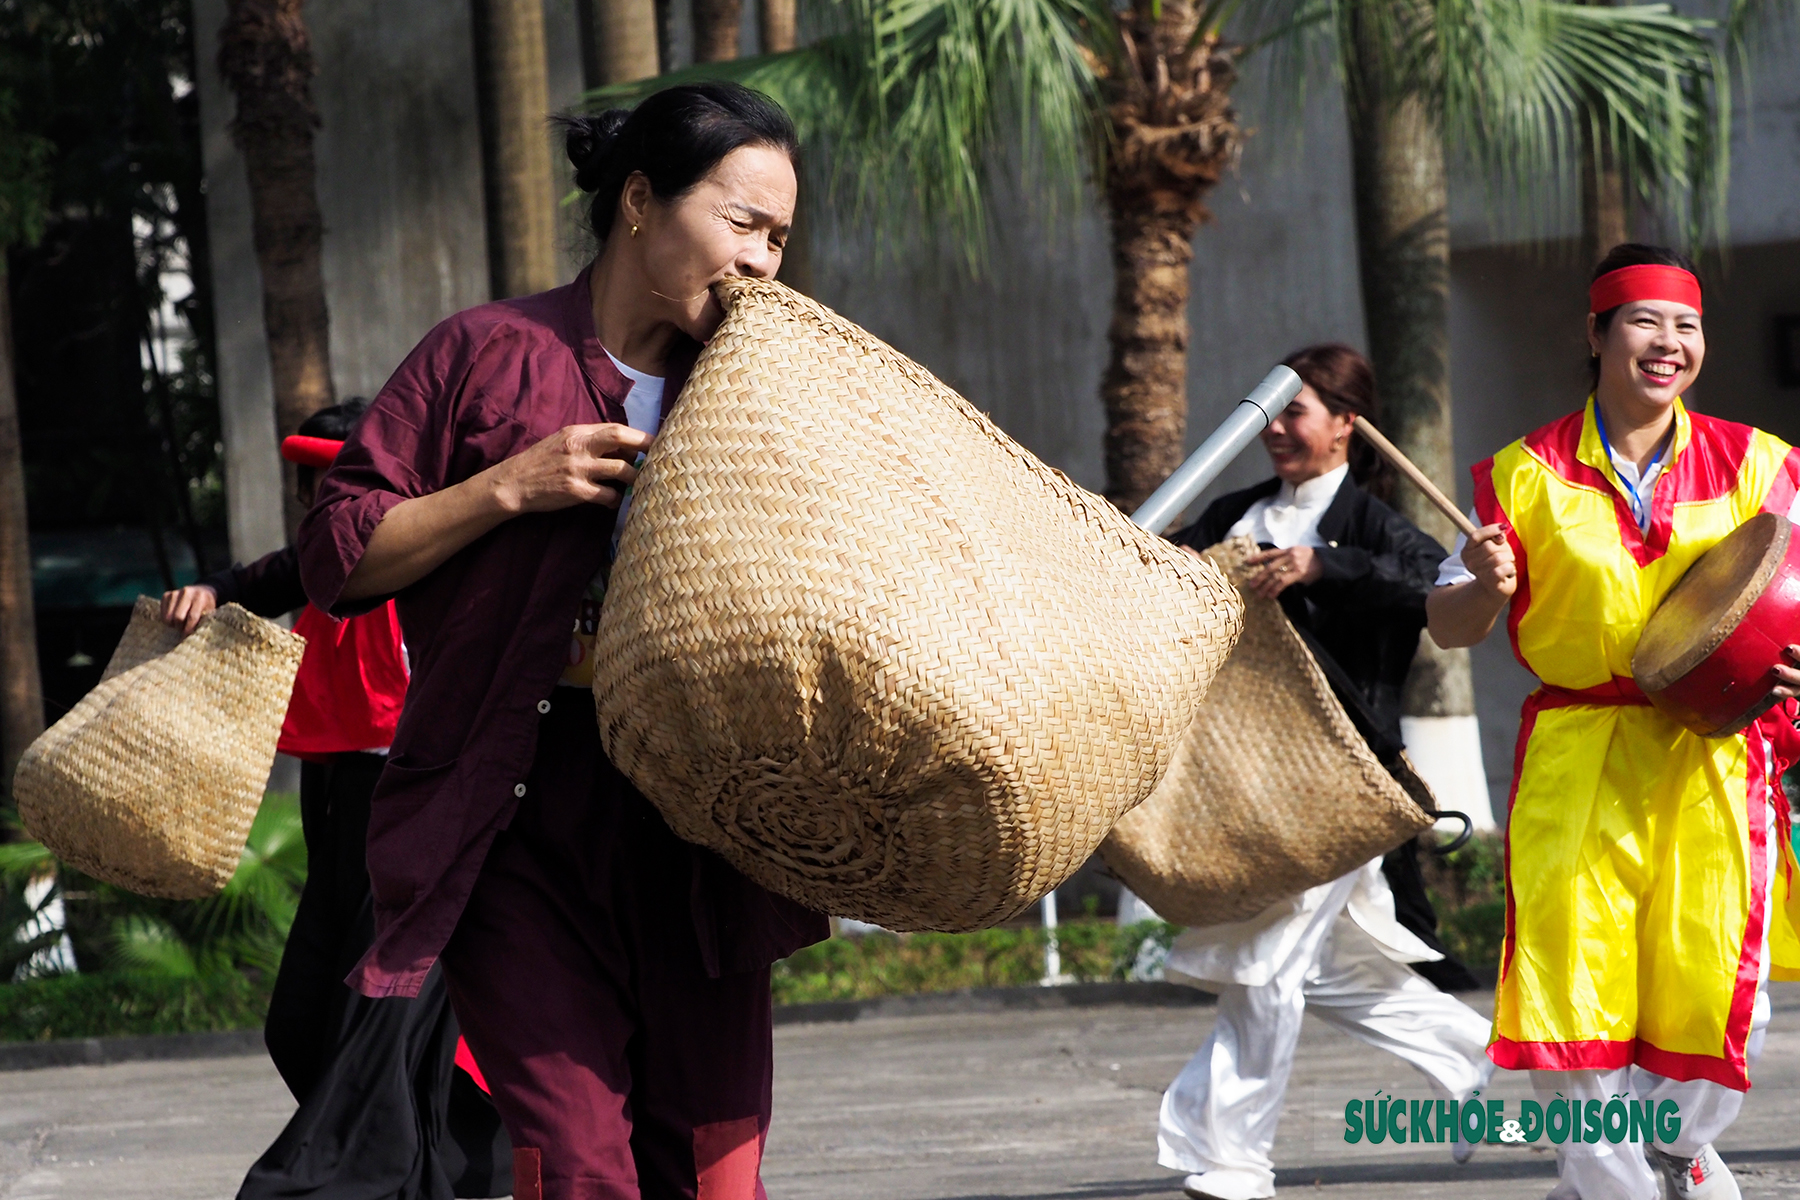 Chạy Ró làng Guột - Trò chơi dân gian đậm nét văn hóa vùng Kinh Bắc  - Ảnh 6.